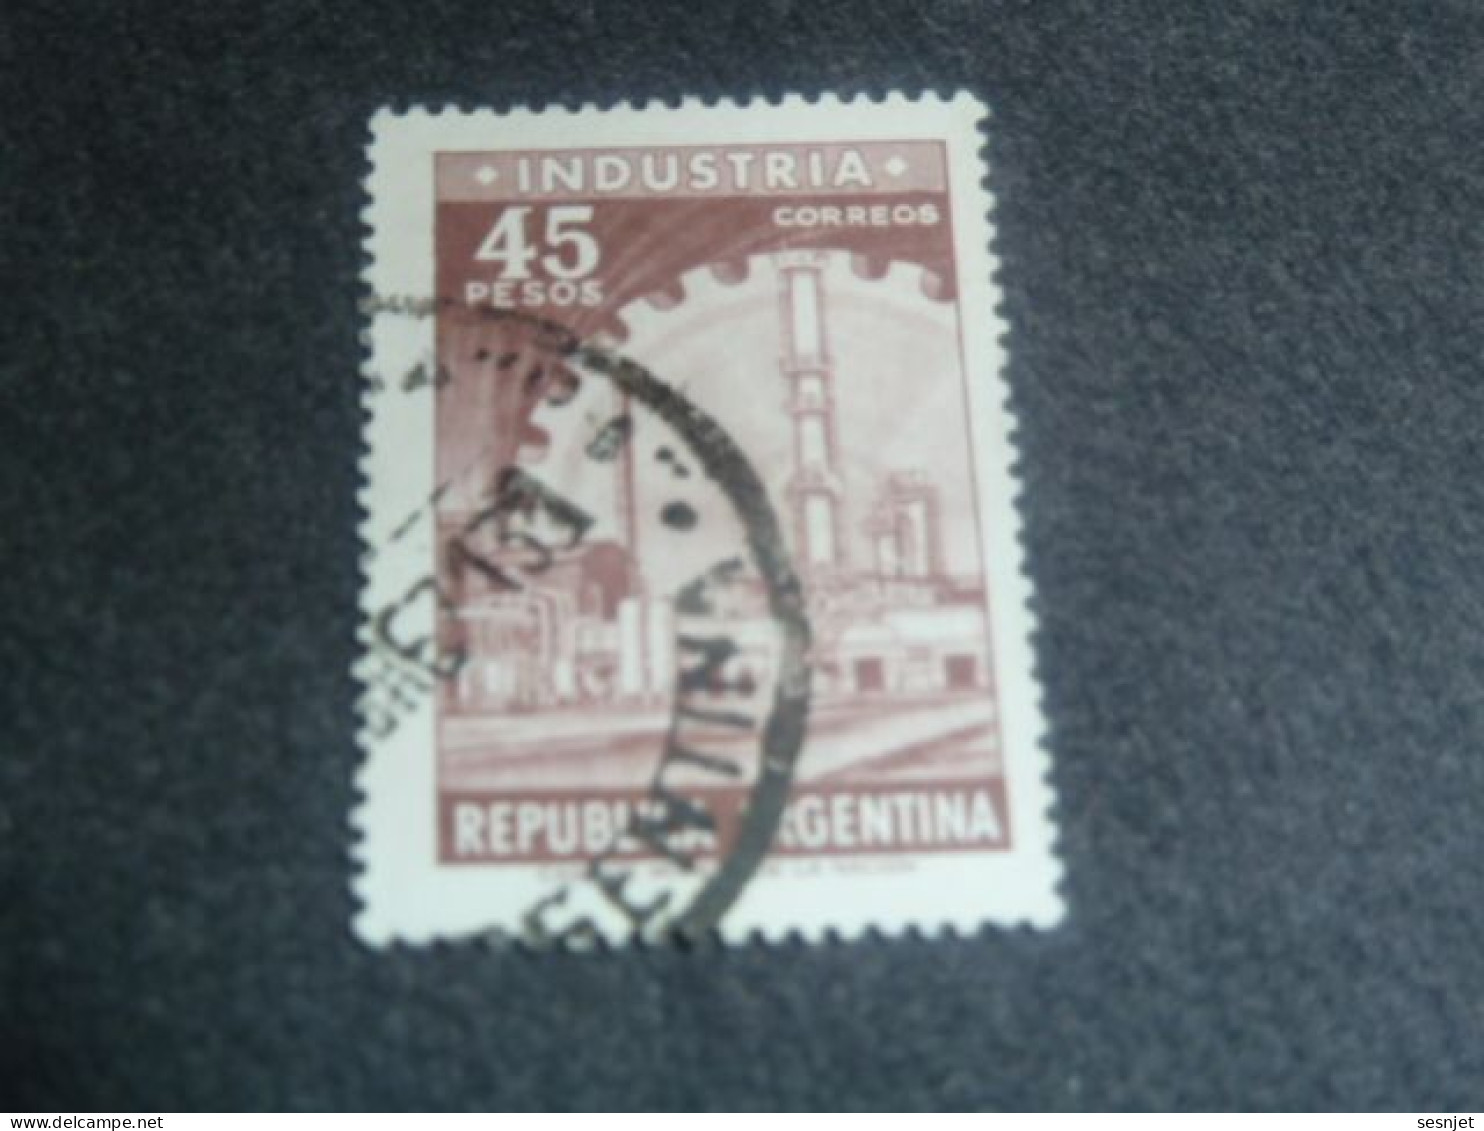 Republica Argentina - Industria - 45 Pesos - Yt 734 - Brun-lilas - Oblitéré - Année 1966 - - Oblitérés